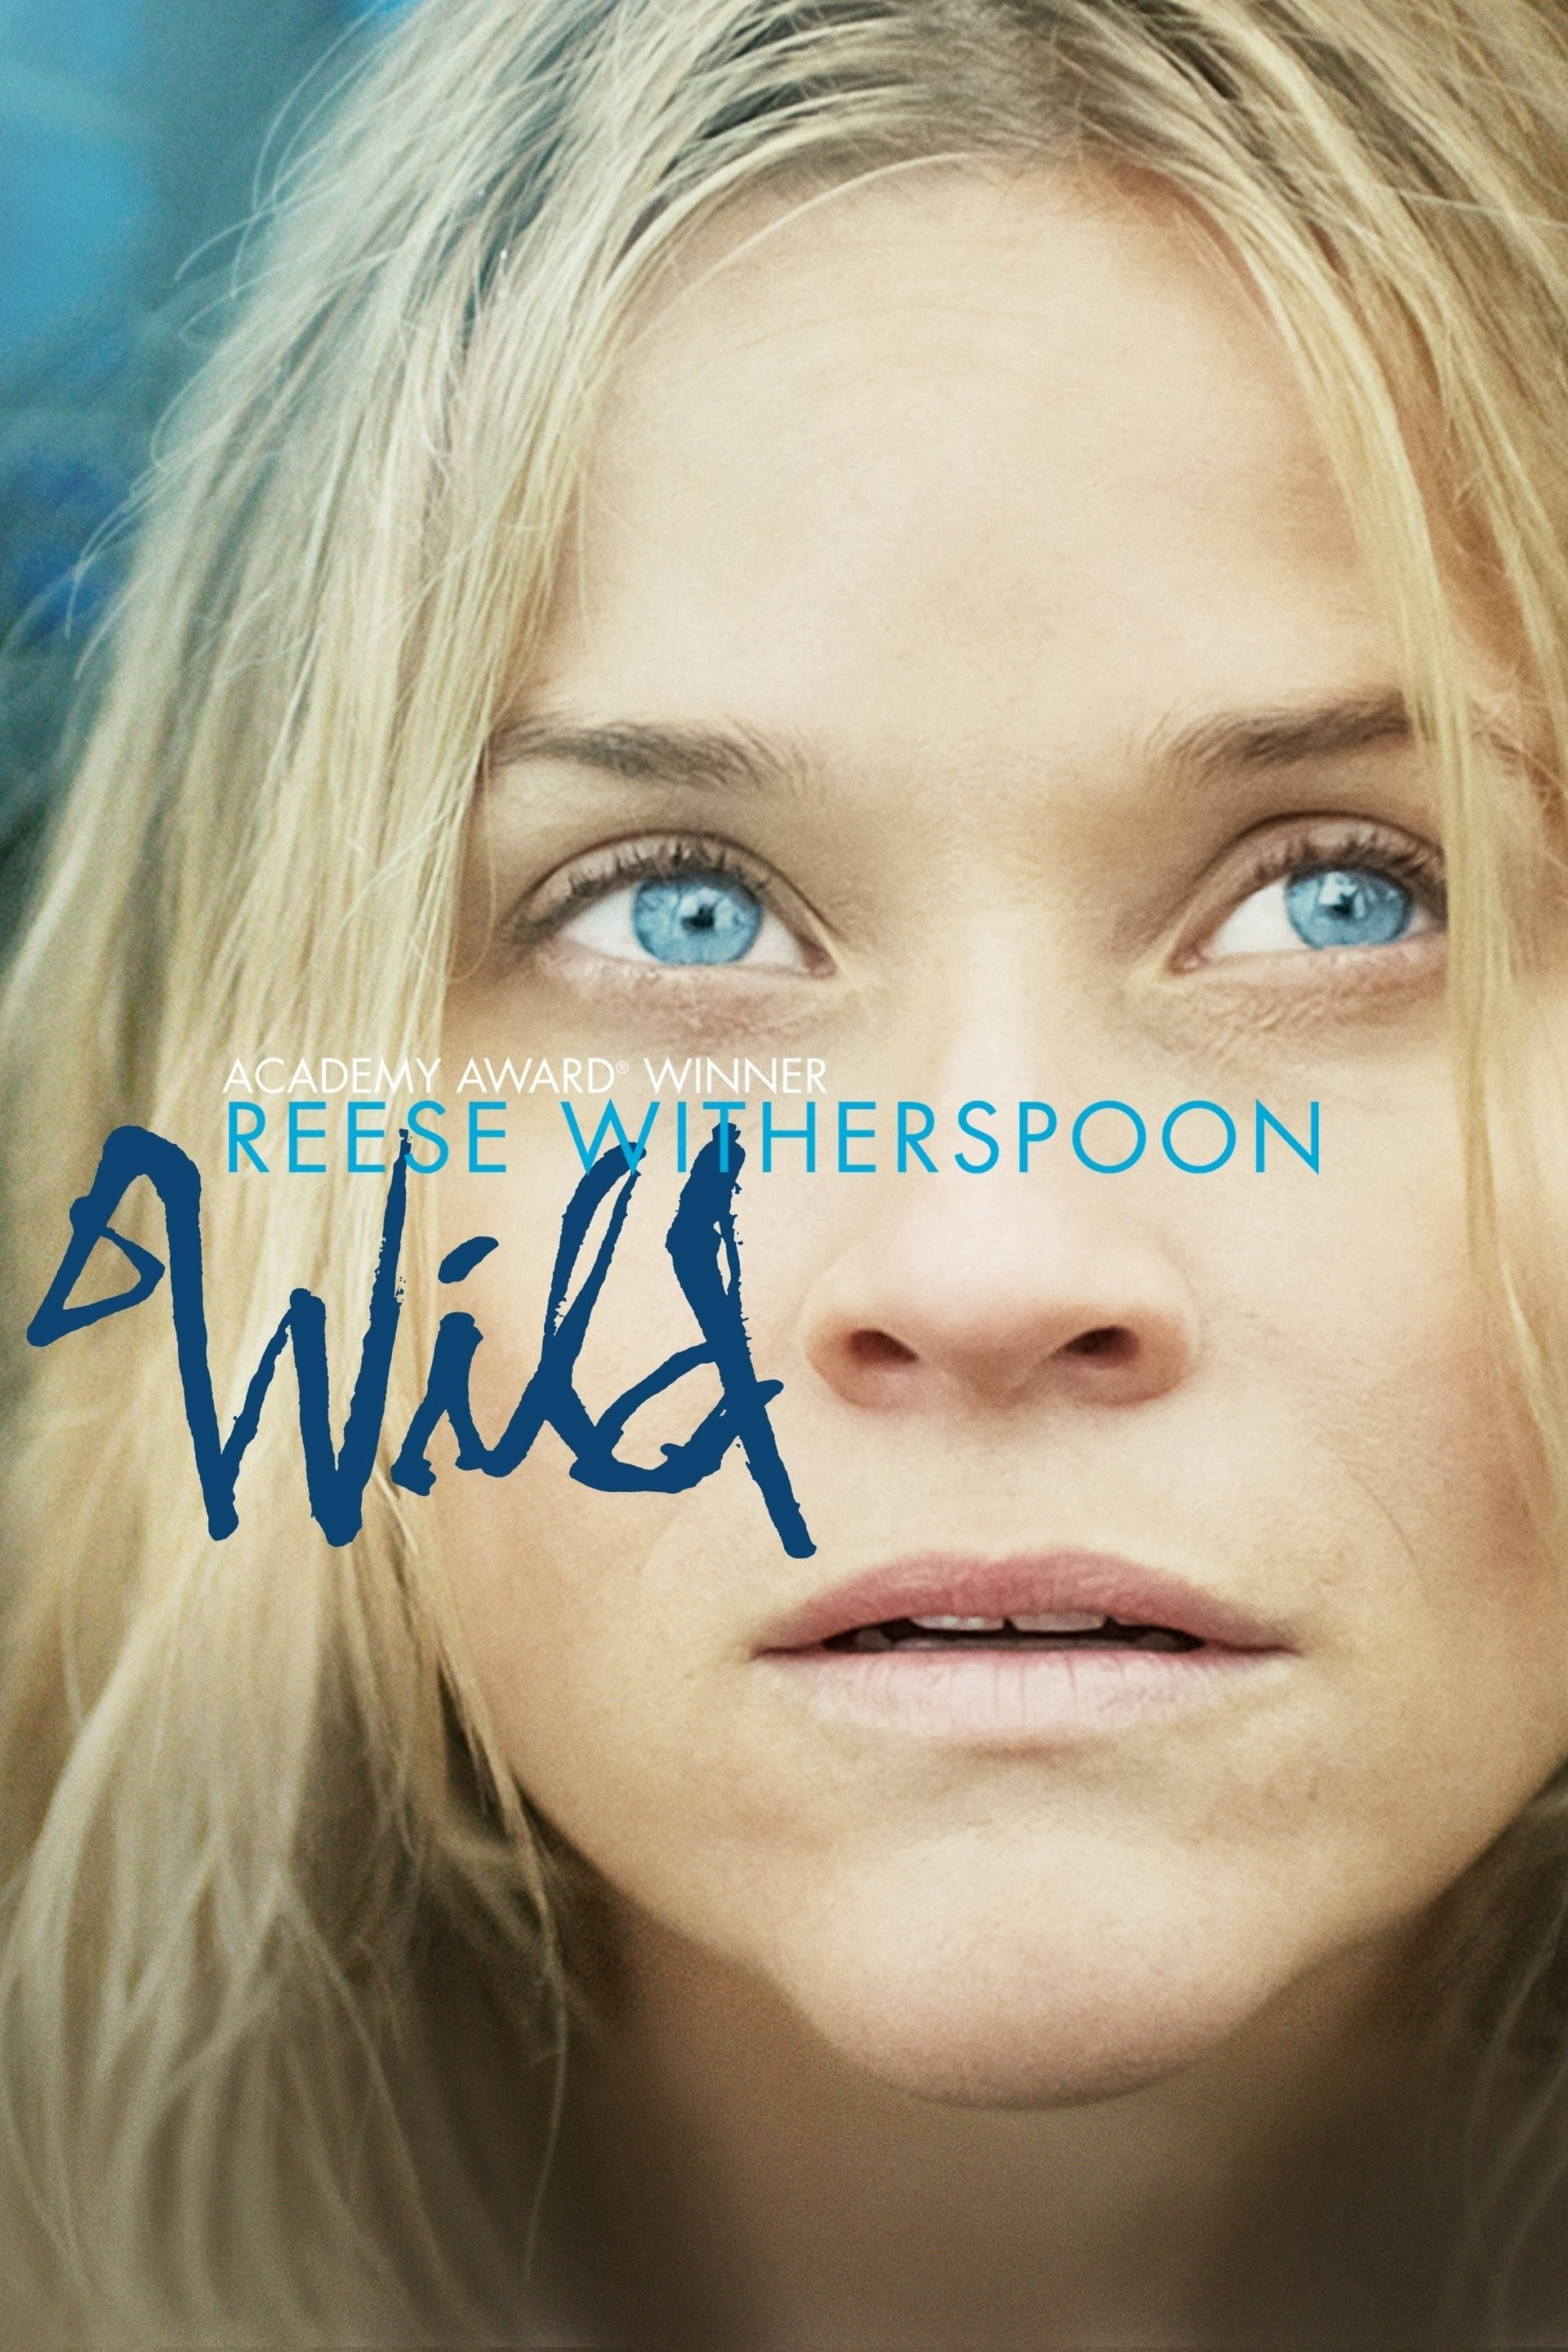 Wild (2014) - IMDb